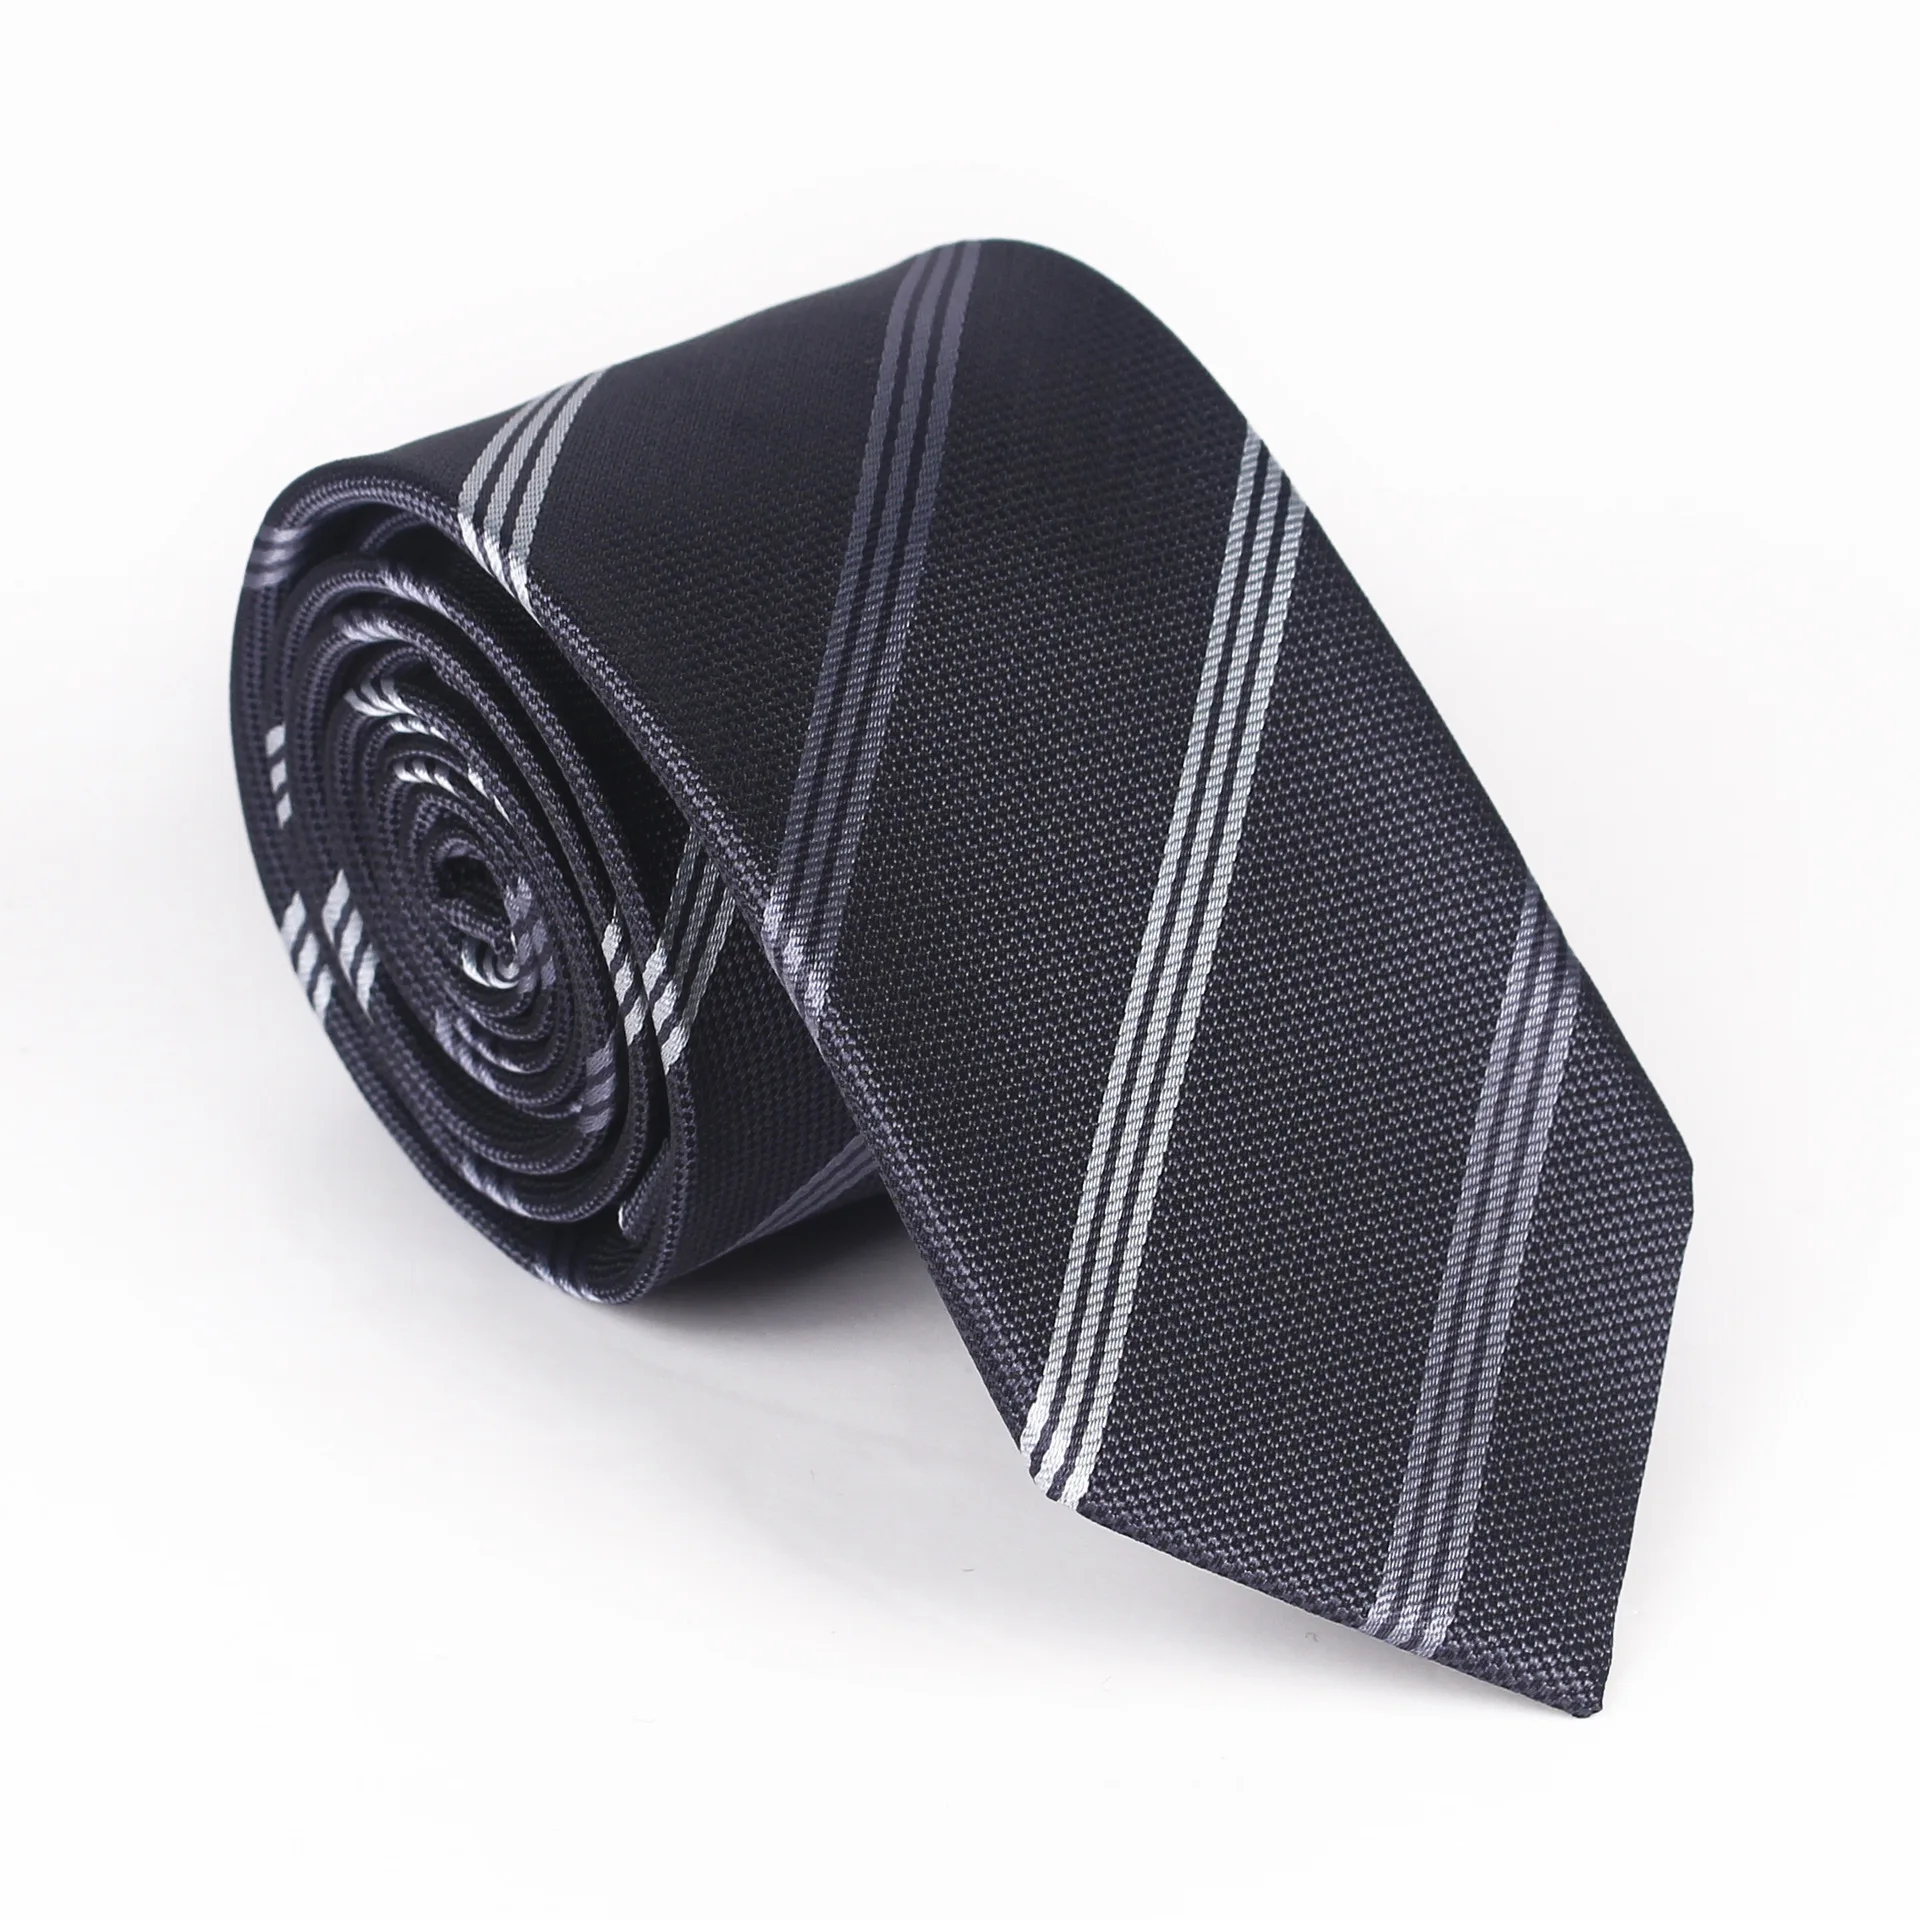 Пятно поколения галстук для мужчин 6 см диагональные полосы платье полиэстер шелк жаккард Бизнес узкий галстук мужской